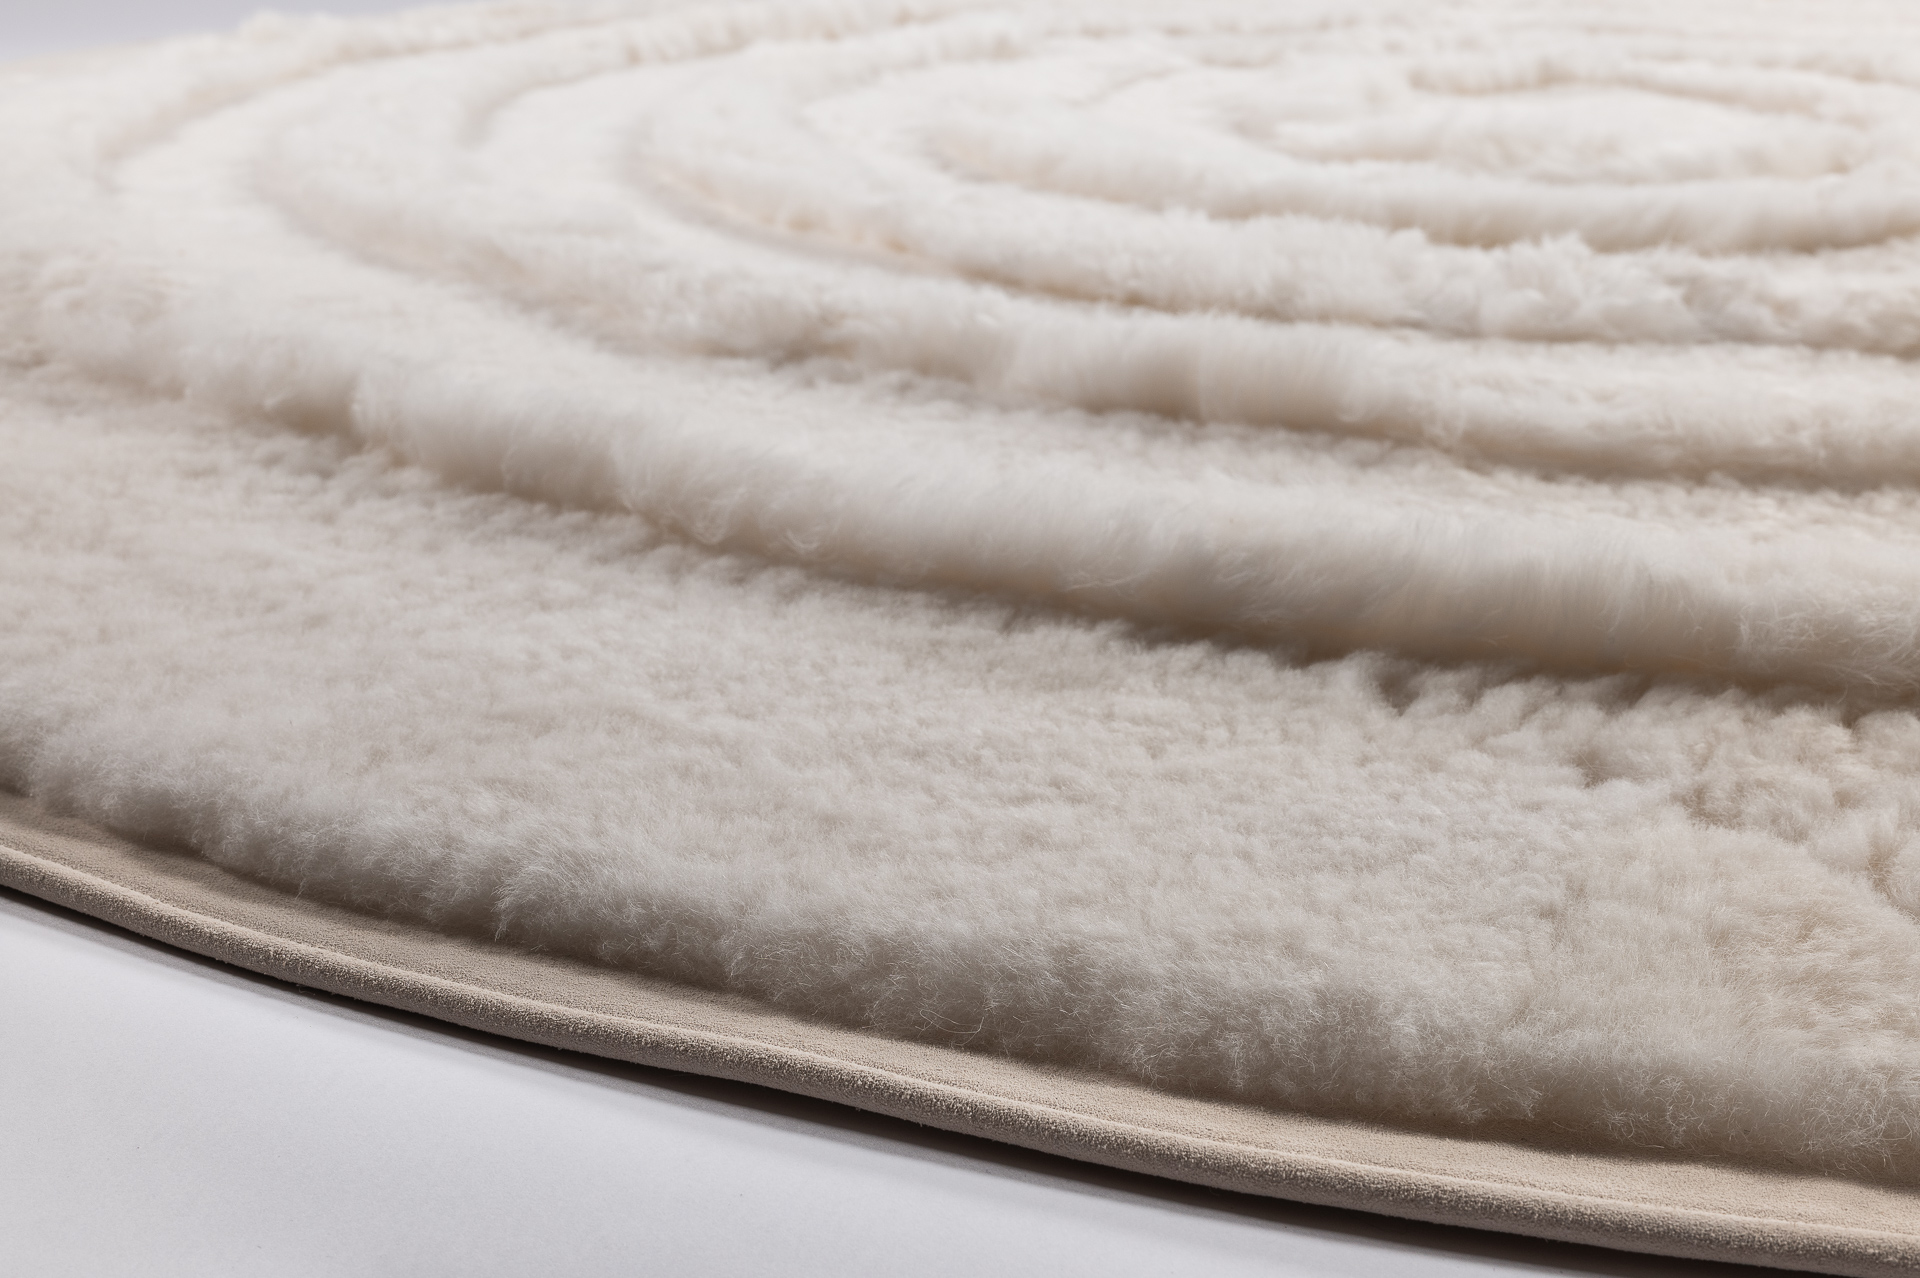 Tapis rond en mouton blanc gansé d'une bordure en nubuck de coloris assorti. Un tapis design et contemporain Made in France fabriqué sur-mesure